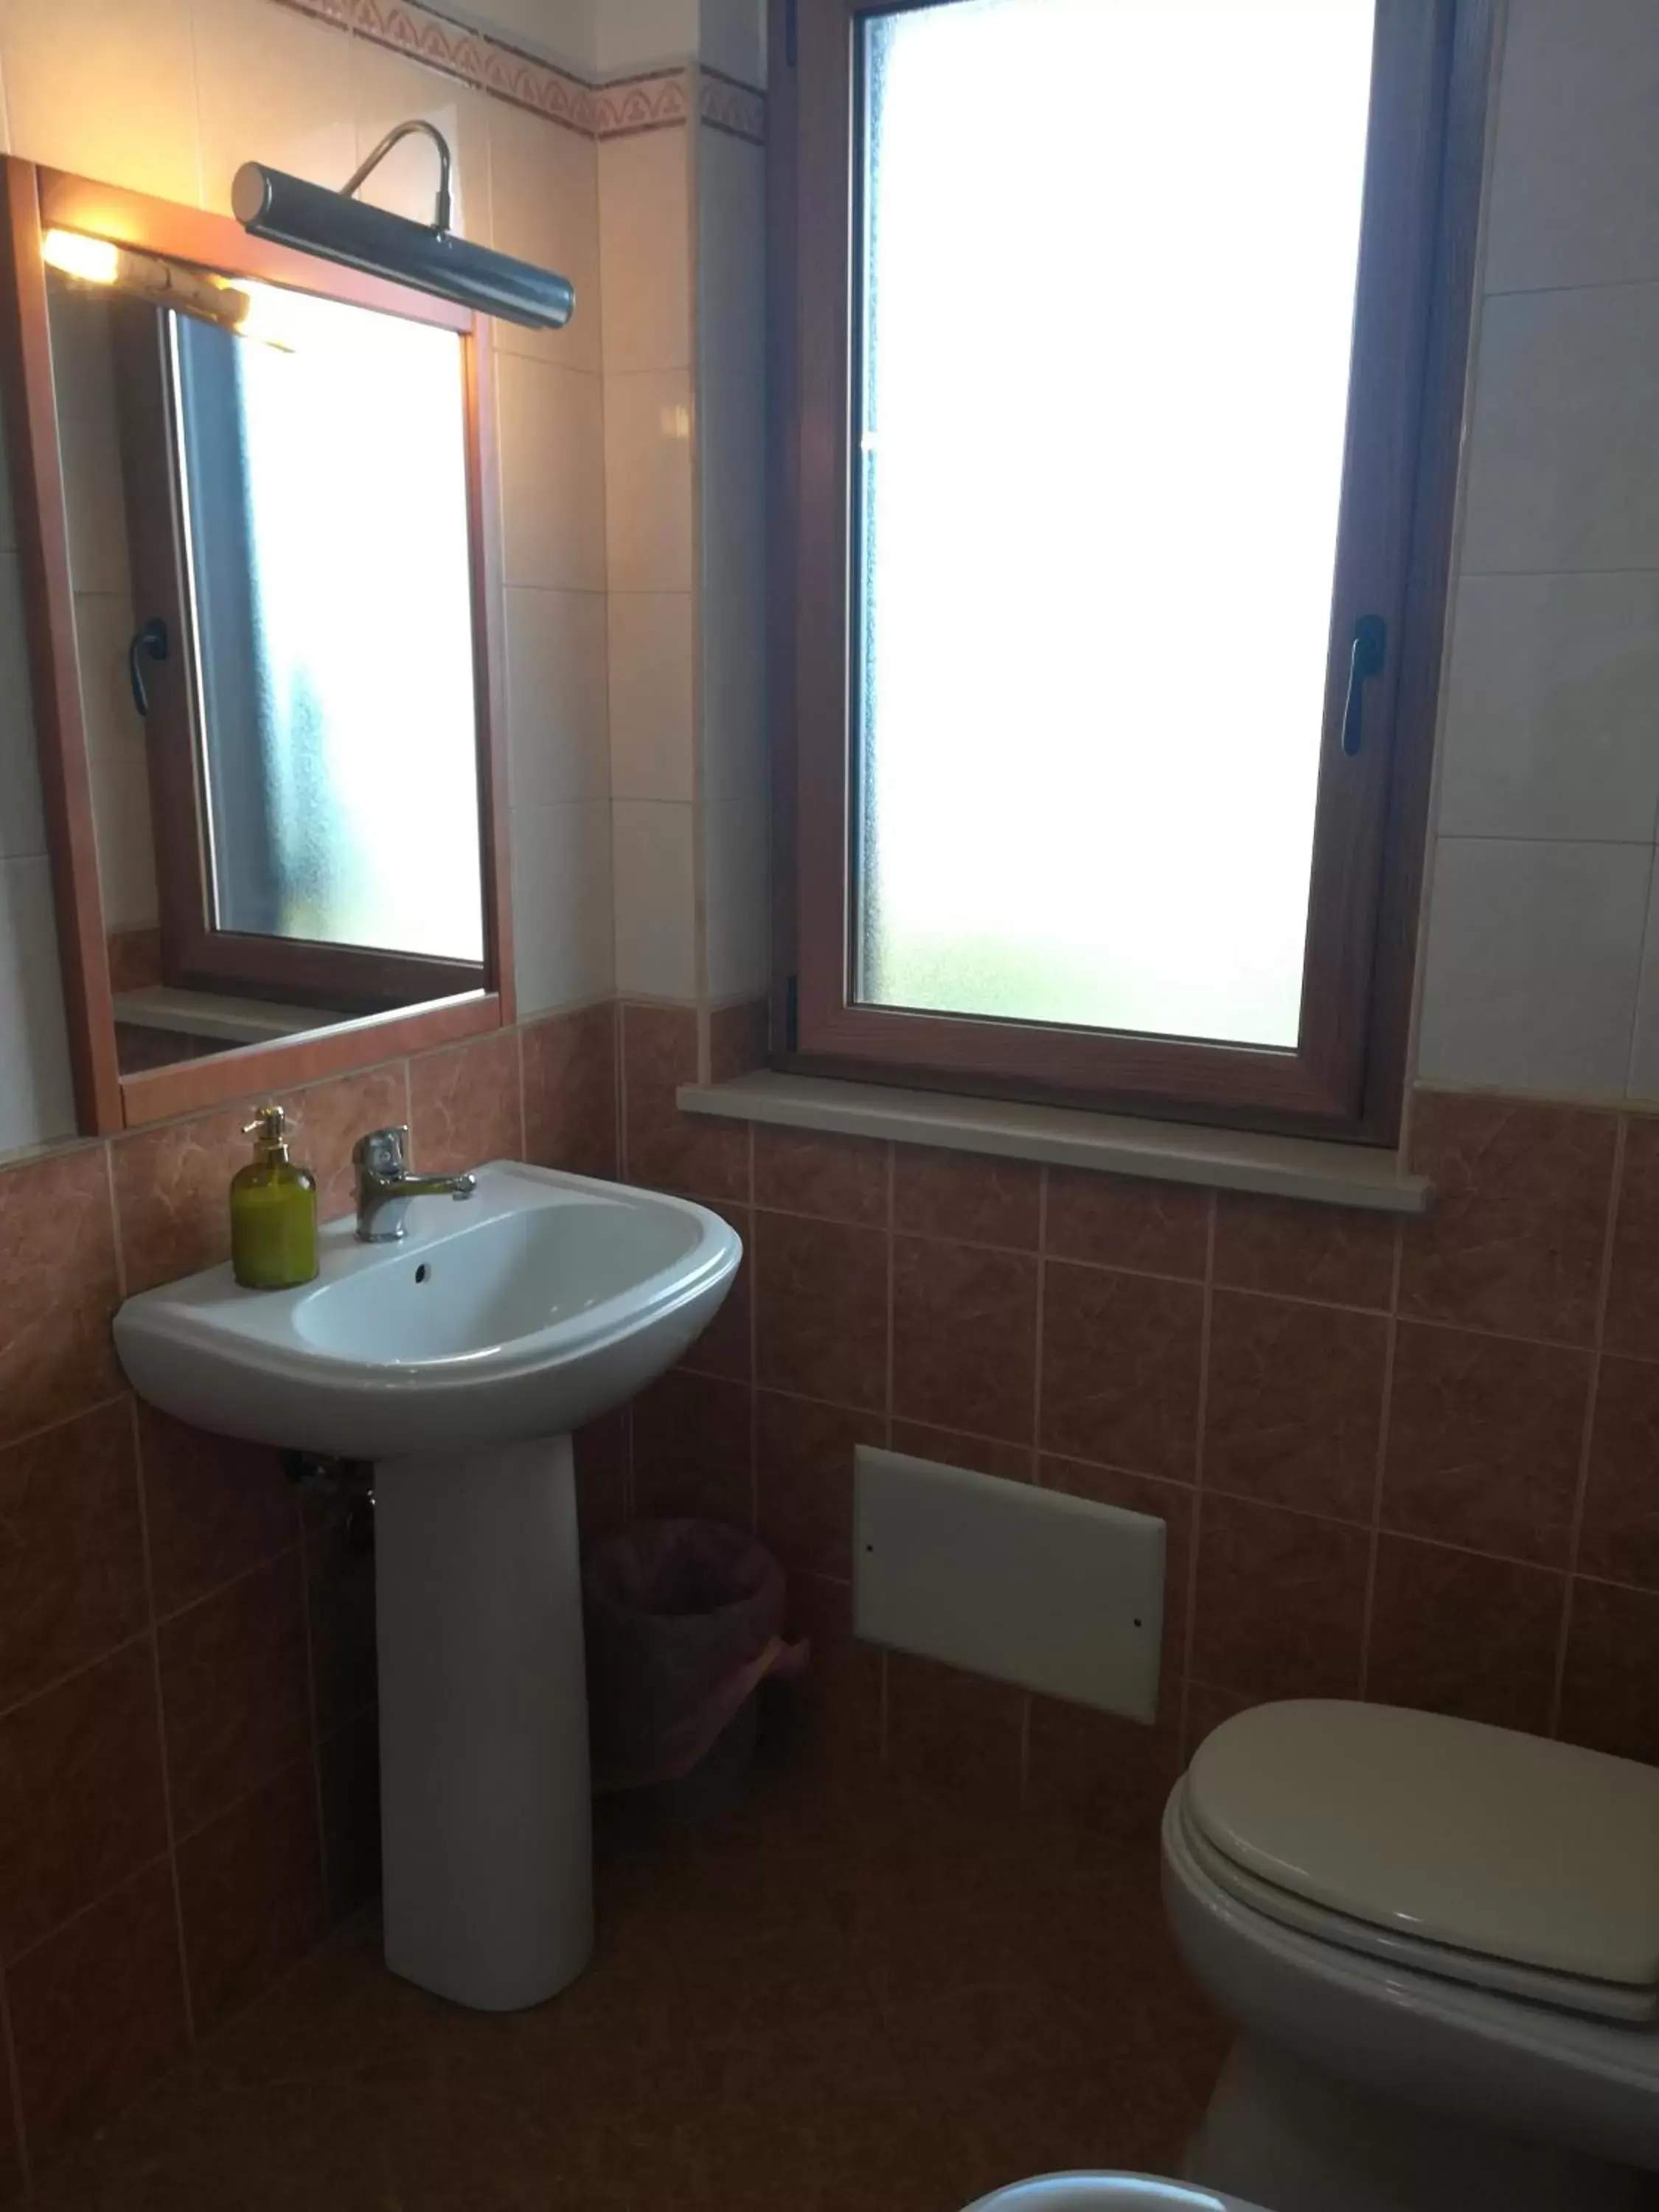 Bathroom in Scilla e Cariddi